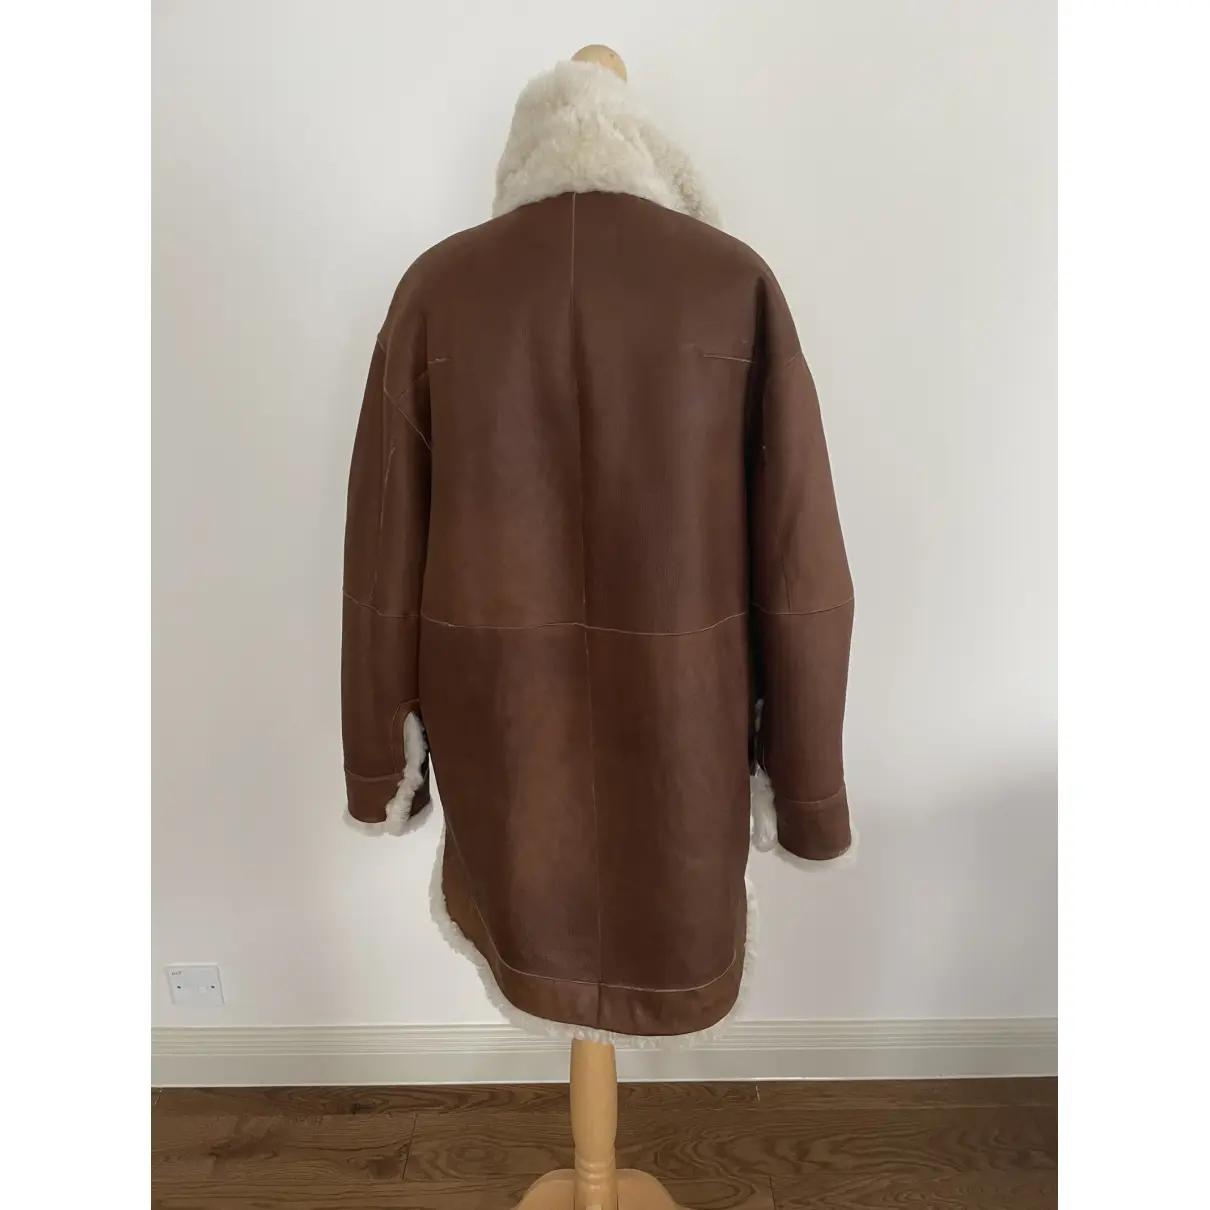 Leather coat Isabel Marant